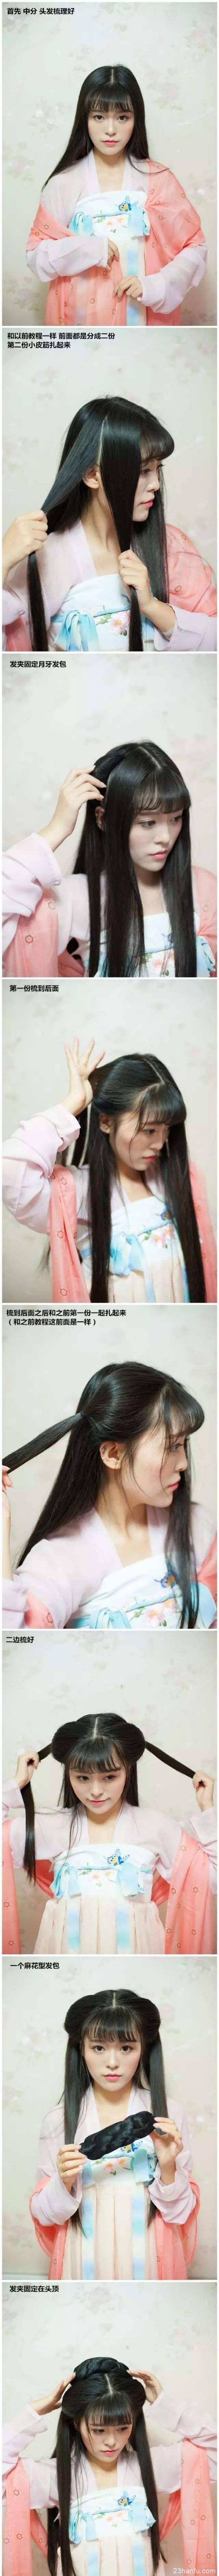 两款汉服发型，襦裙发型，古装盘发，齐刘海可爱温柔古装造型教程